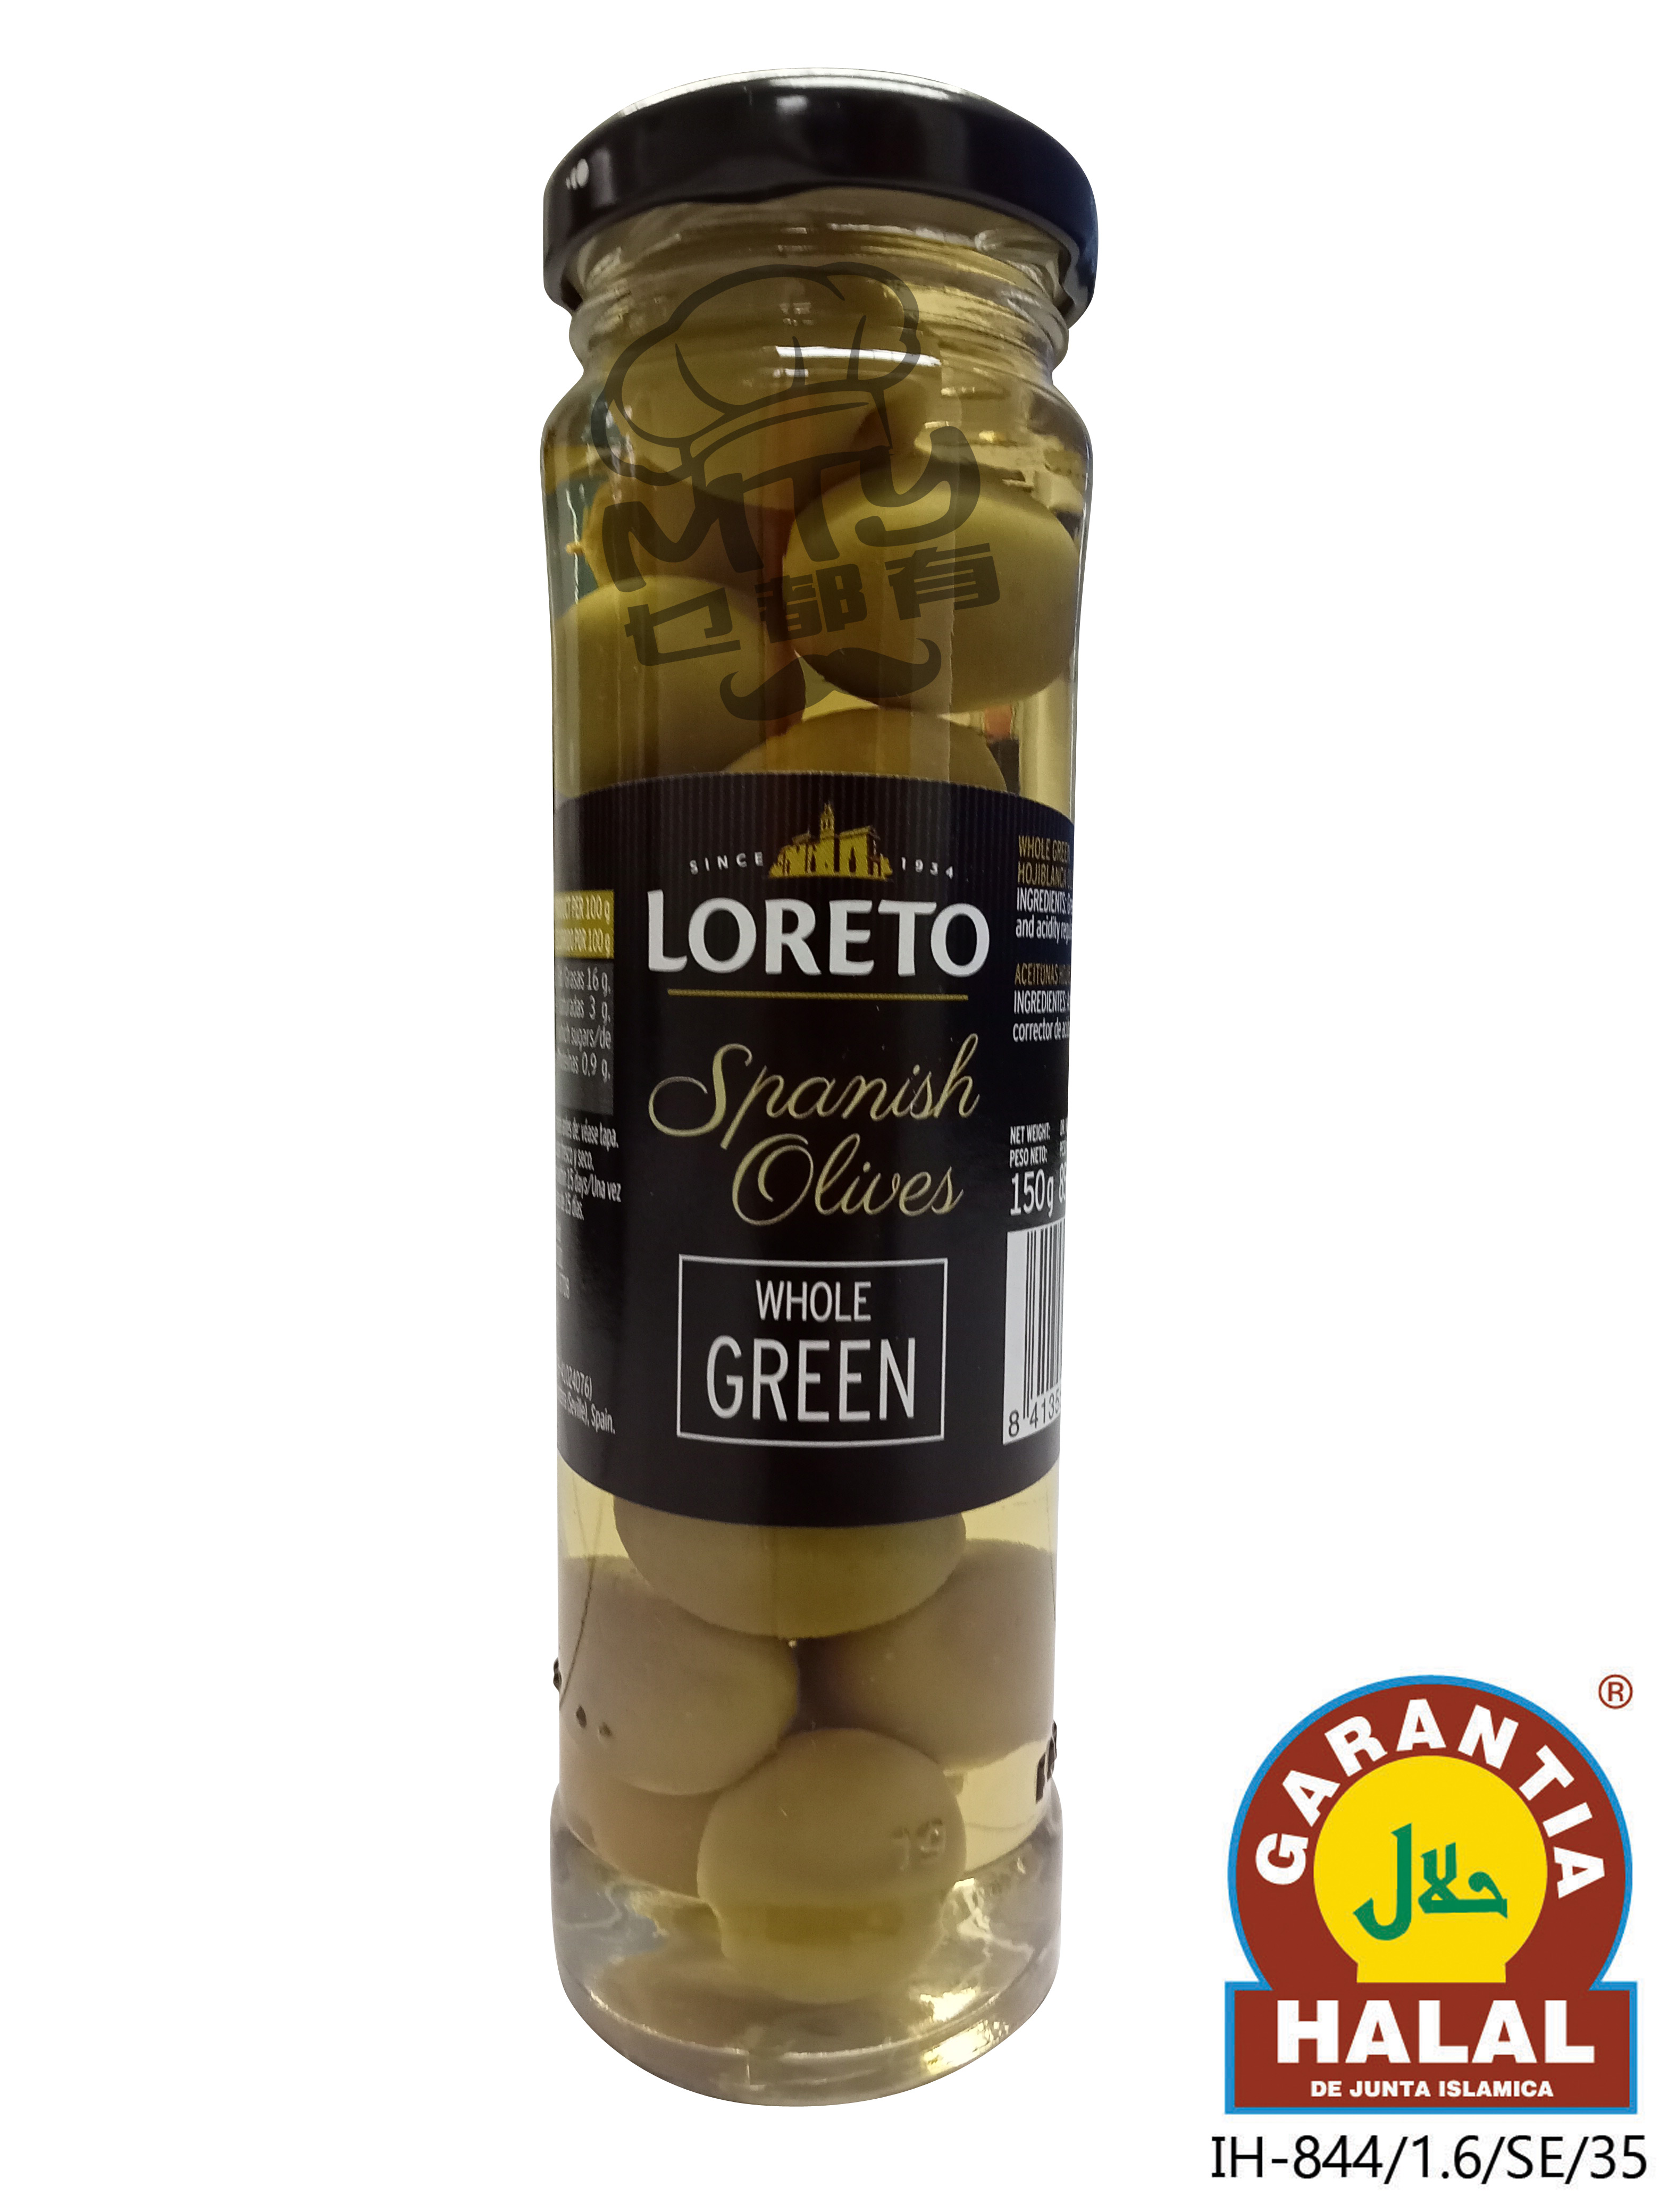 Loreto Plain Green Olive 150g